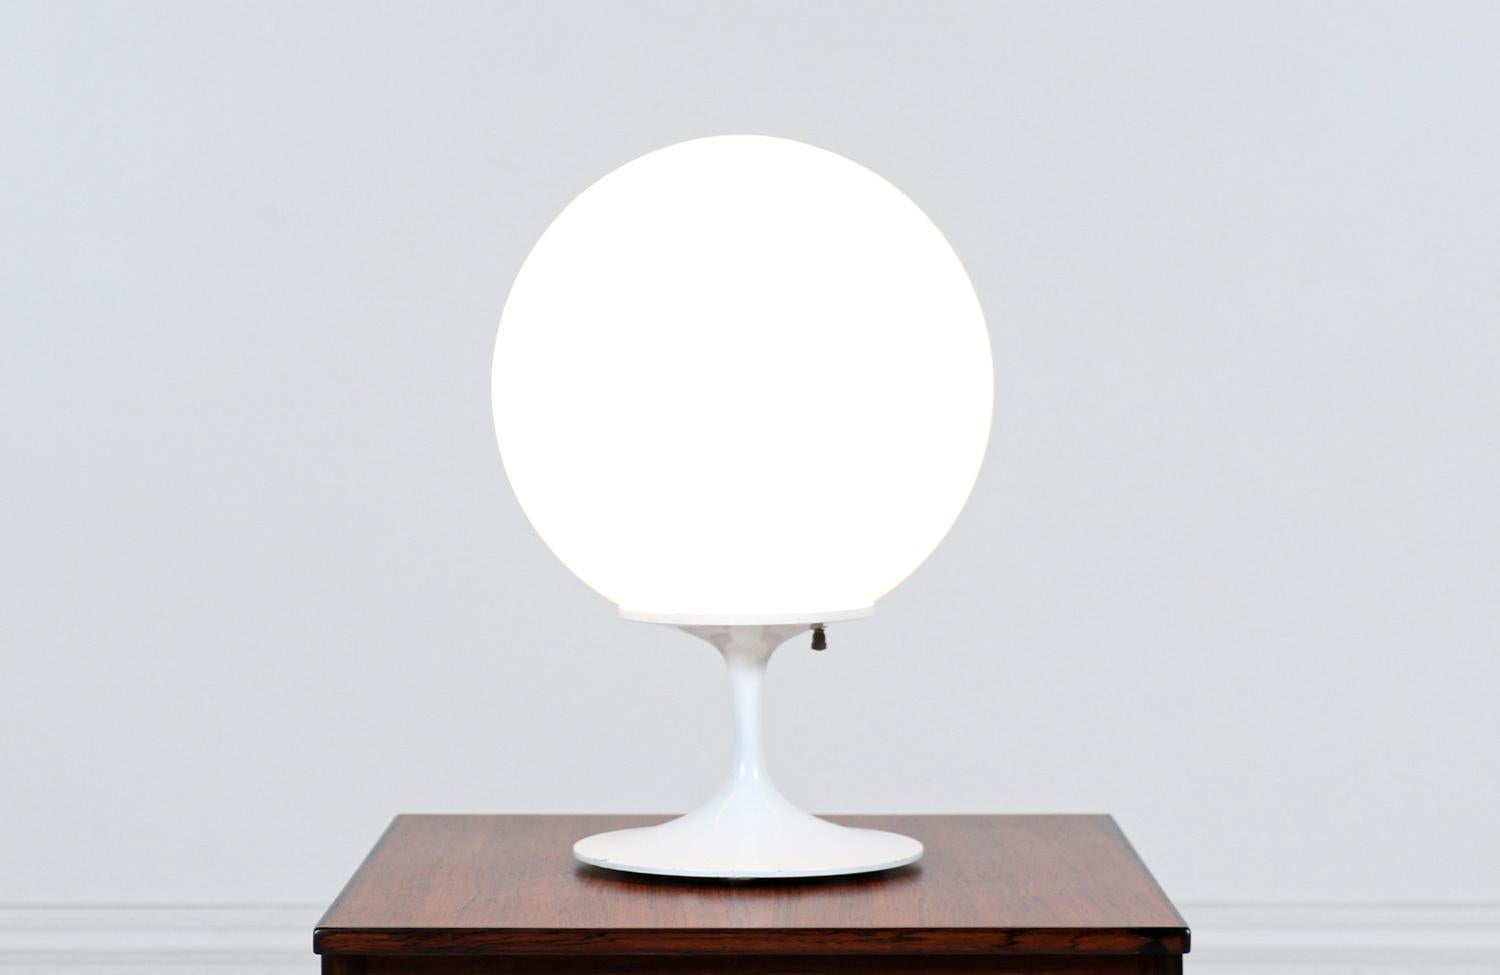 Lampe de table moderne classique conçue par le designer Bill Curry, basé à Los Angeles, pour la série 